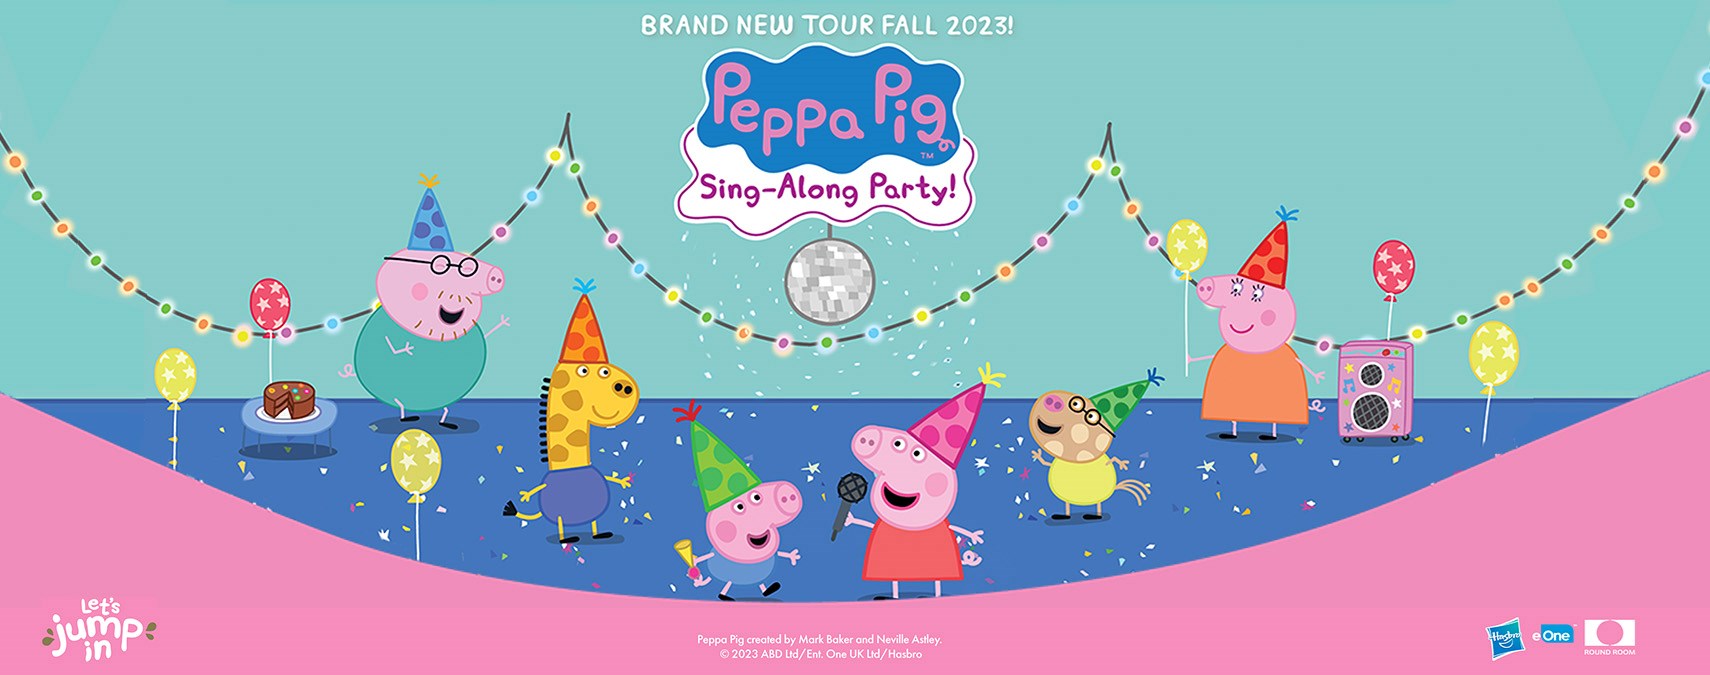 Peppa Pig's Sing-Along Party! -November 26, 2023 at 2:00pm